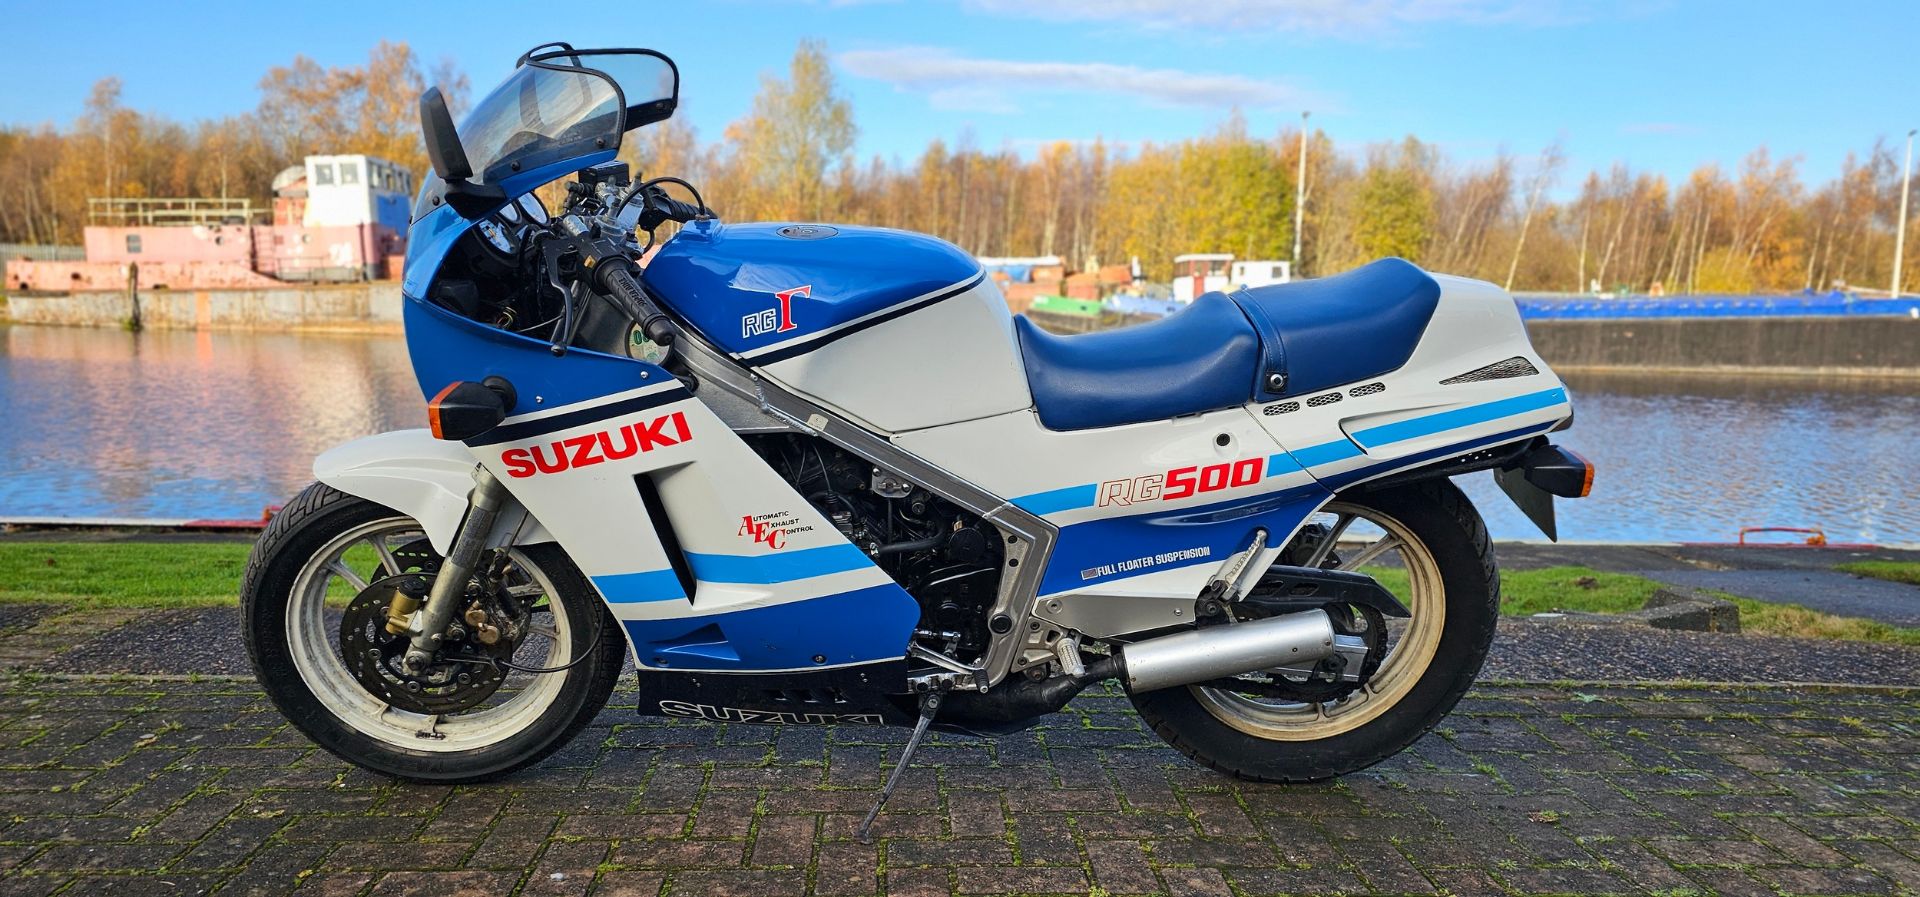 1988 Suzuki RG 500, 498cc. Registration number E558 WAT. Frame number HM31A -106280. Engine number - Image 2 of 15